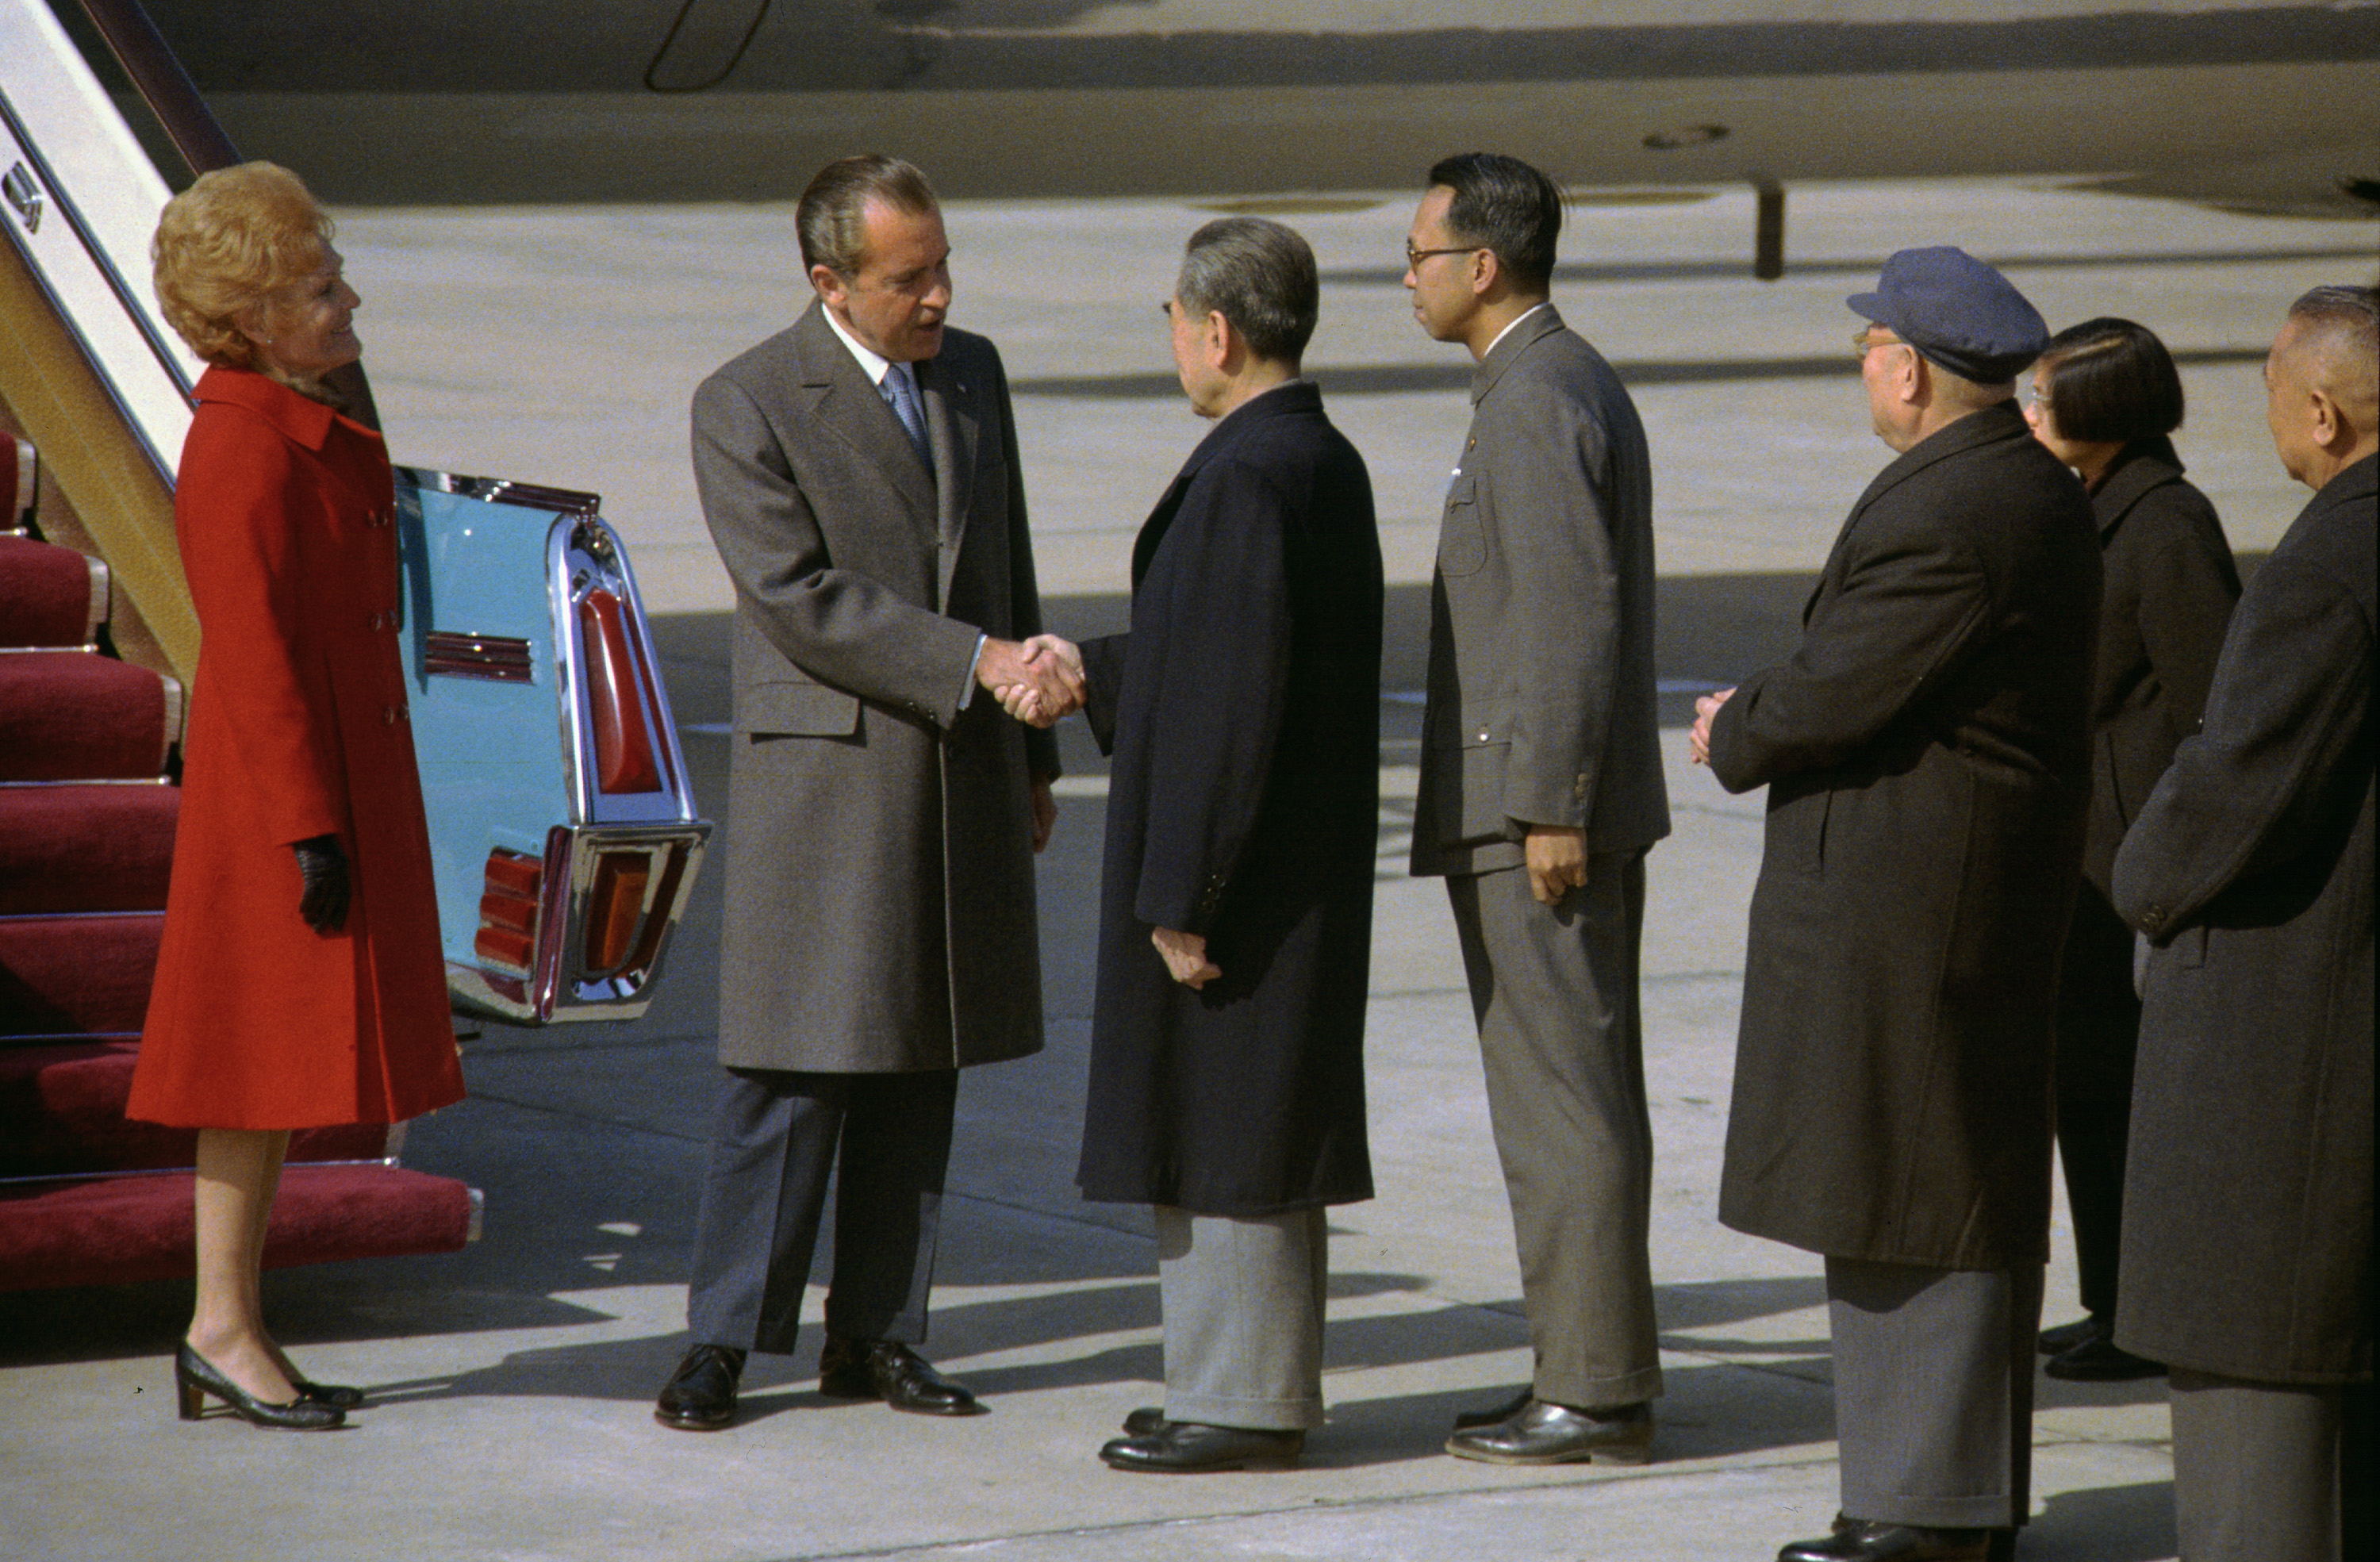 走下舷梯的尼克松与周恩来握手寒暄